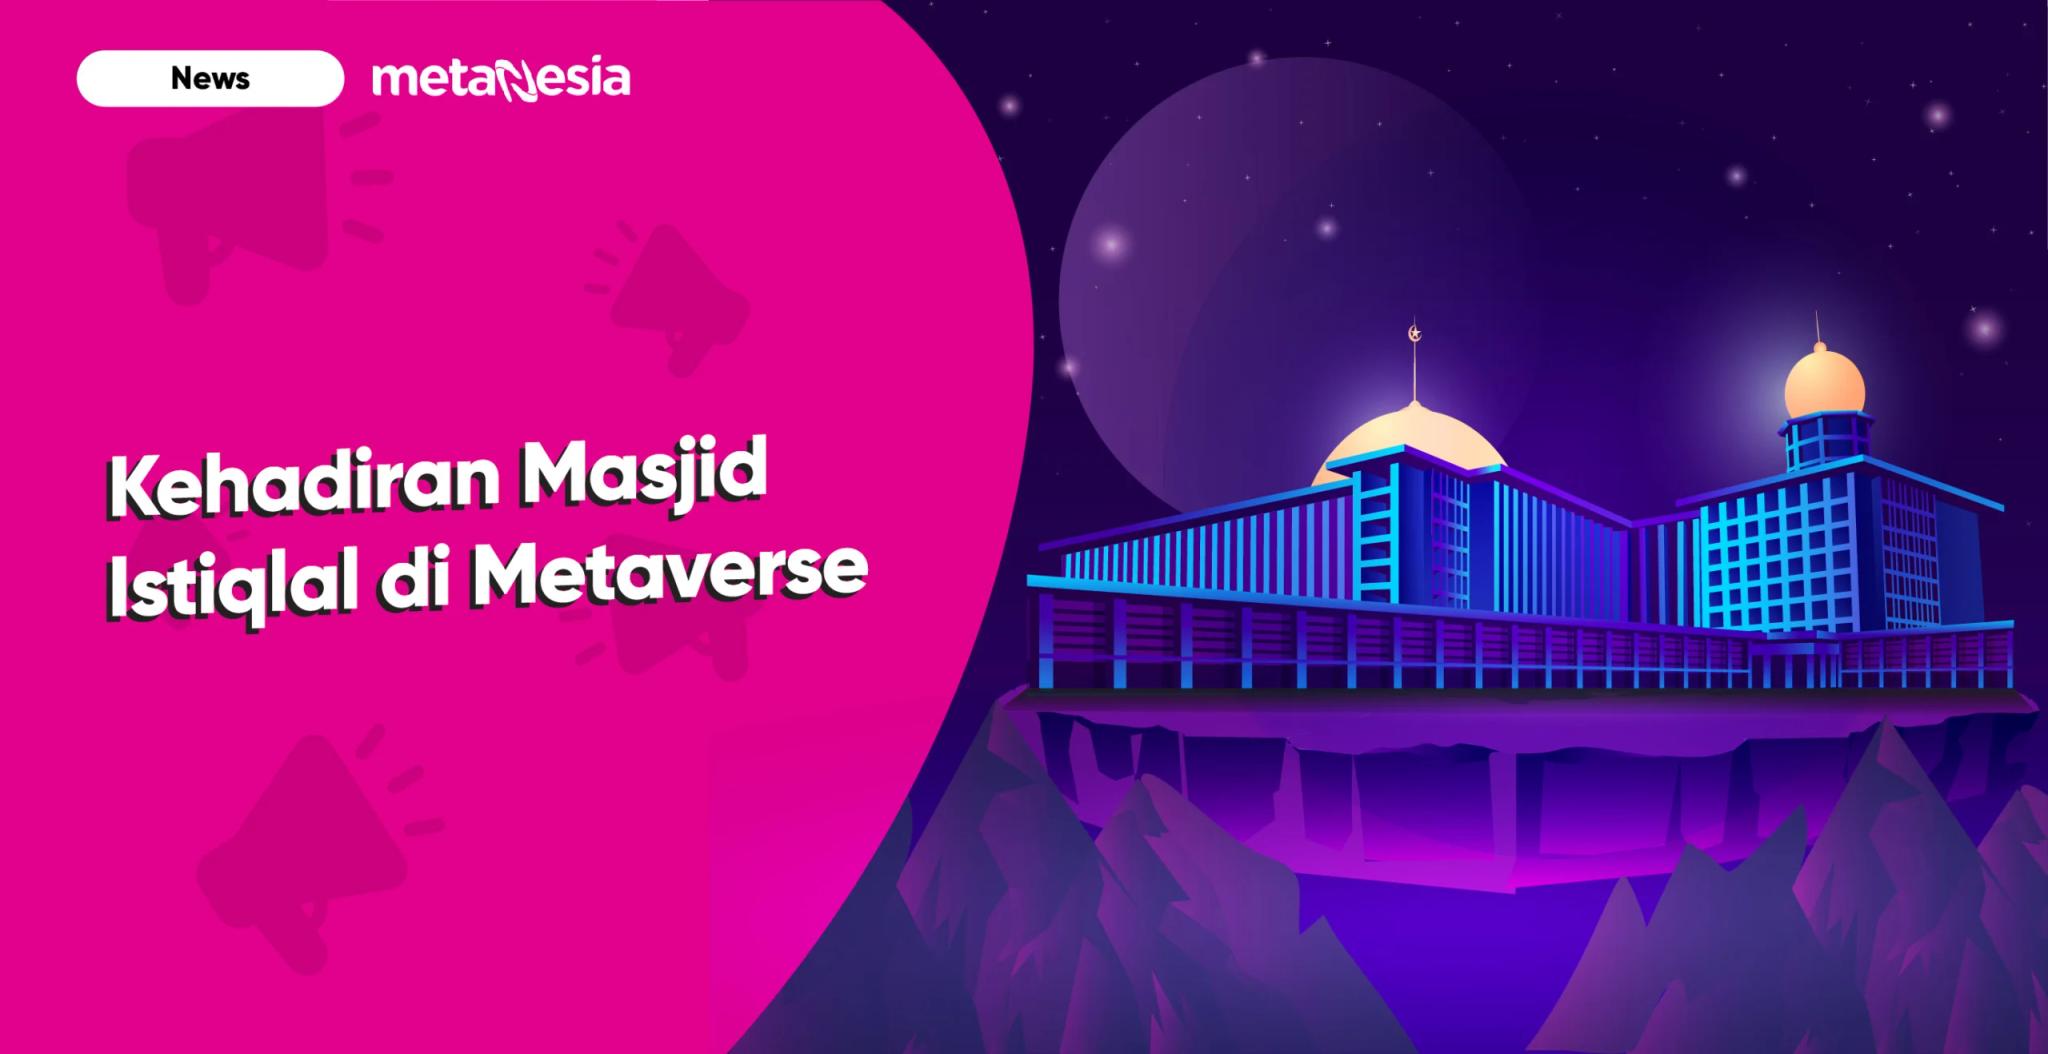 Kehadiran Masjid Istiqlal sebagai Masjid Pertama di Ekosistem Metaverse Indonesia